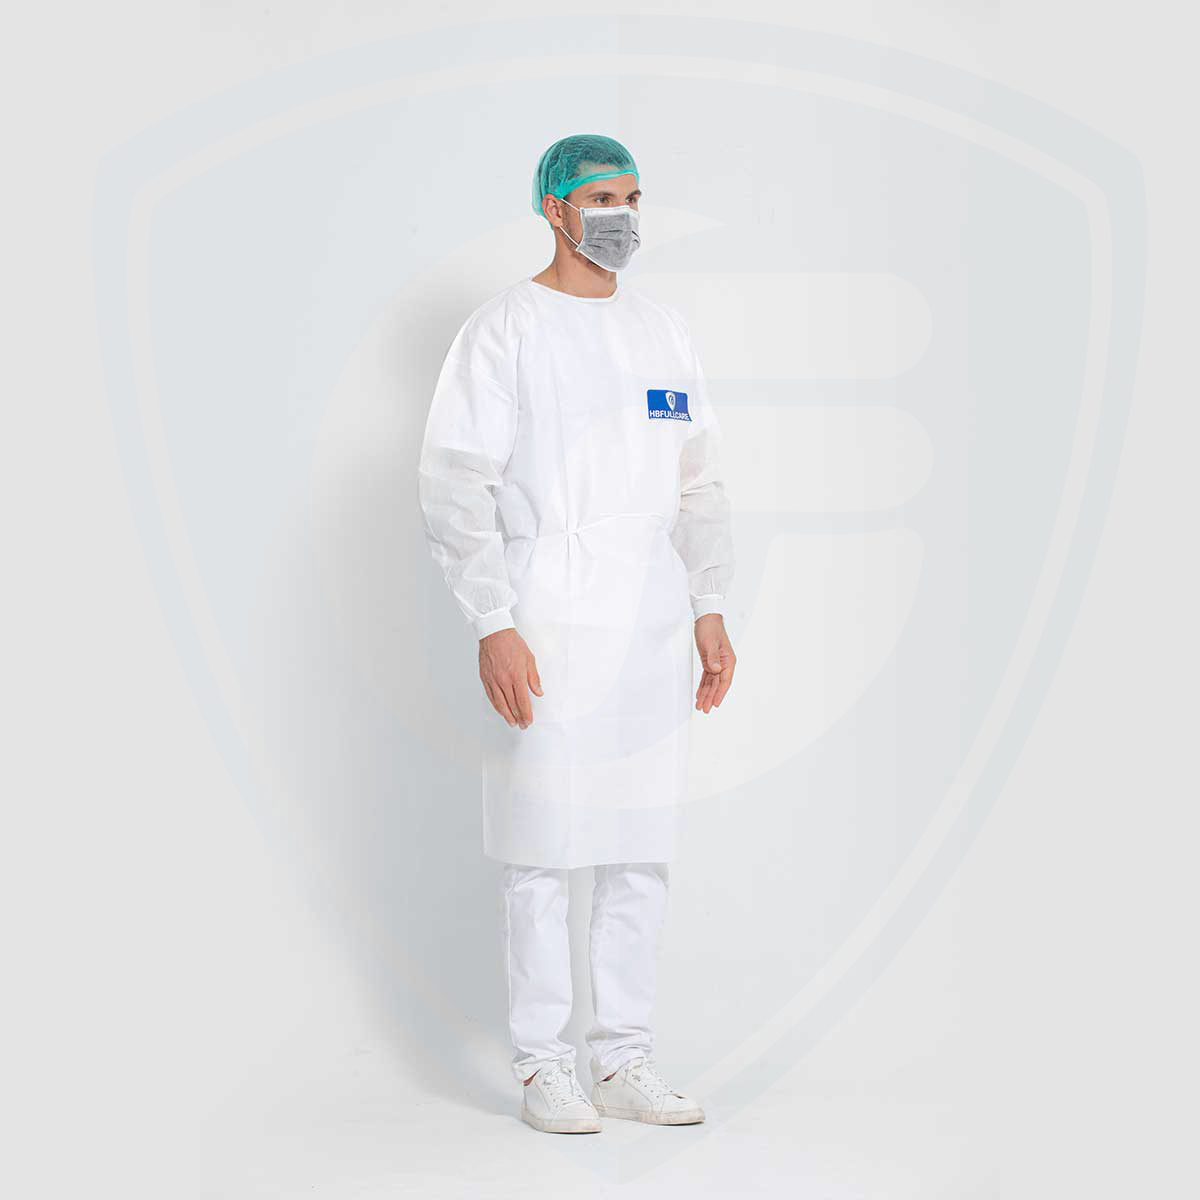 Camice chirurgico monouso bianco per isolamento medico impermeabile AAMI PB70 Level3